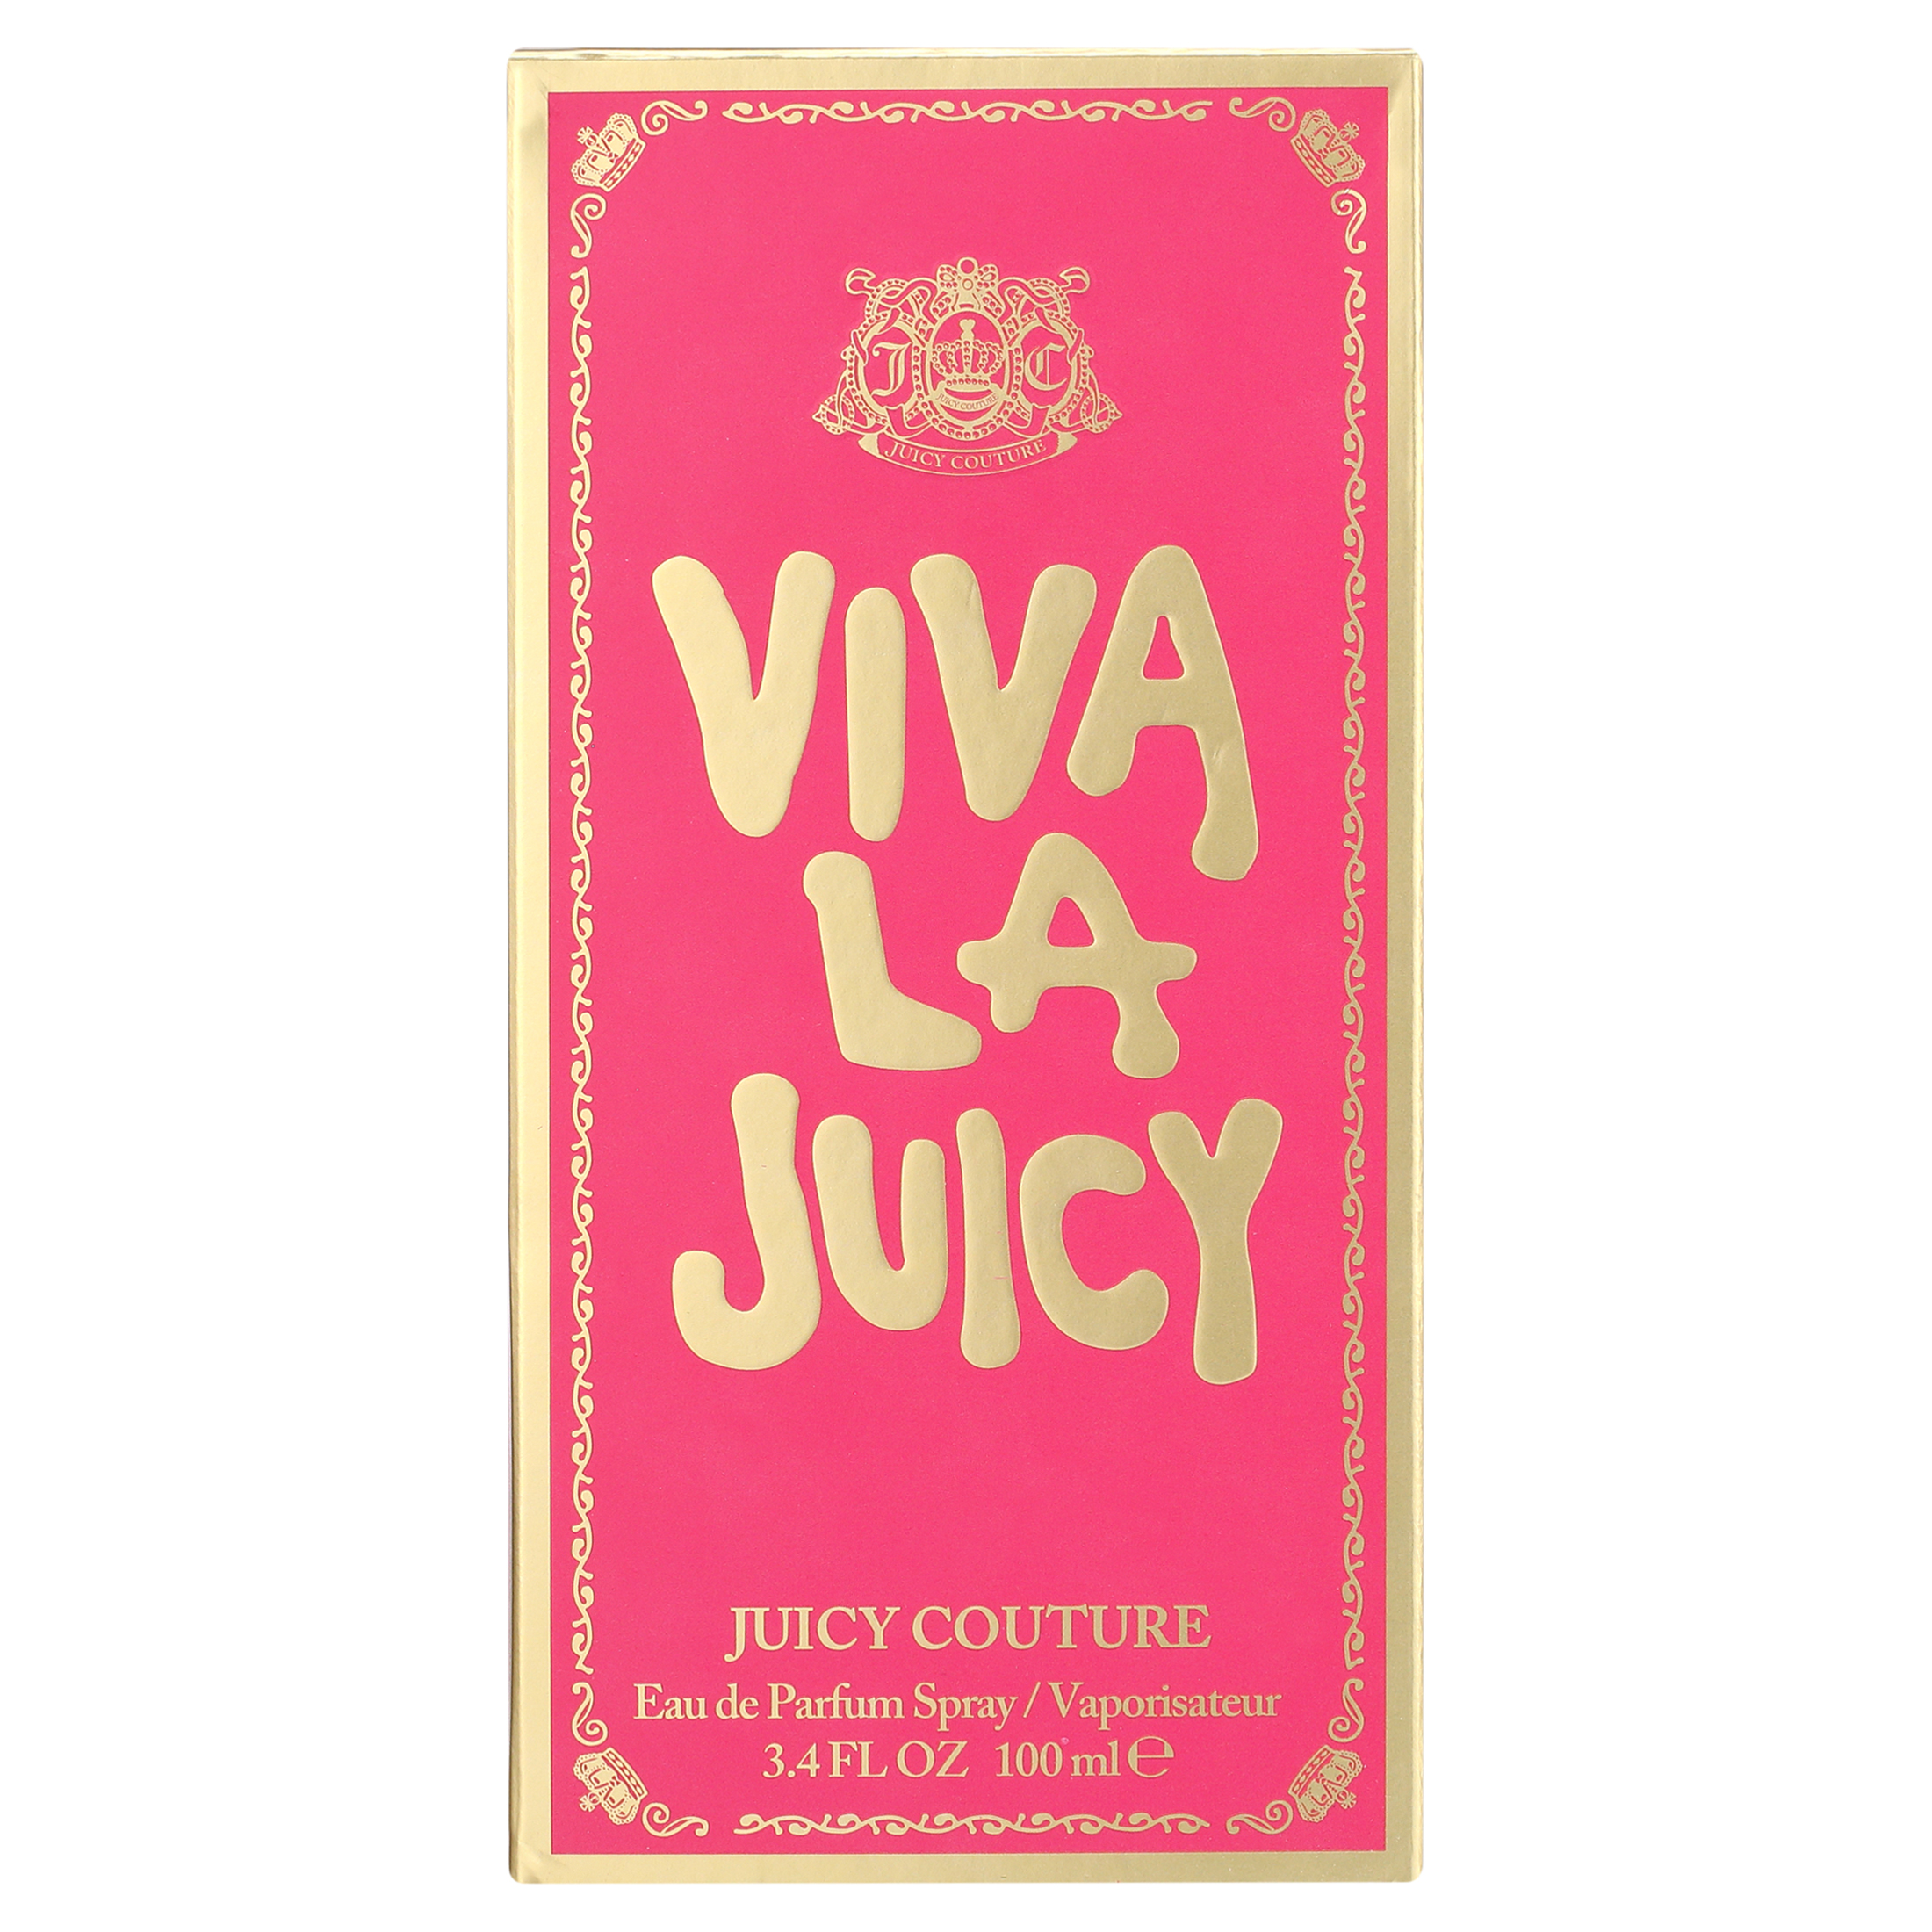 Juicy Couture Viva La Juicy Eau de Parfum Perfume for Women, 3.4 oz - image 4 of 7